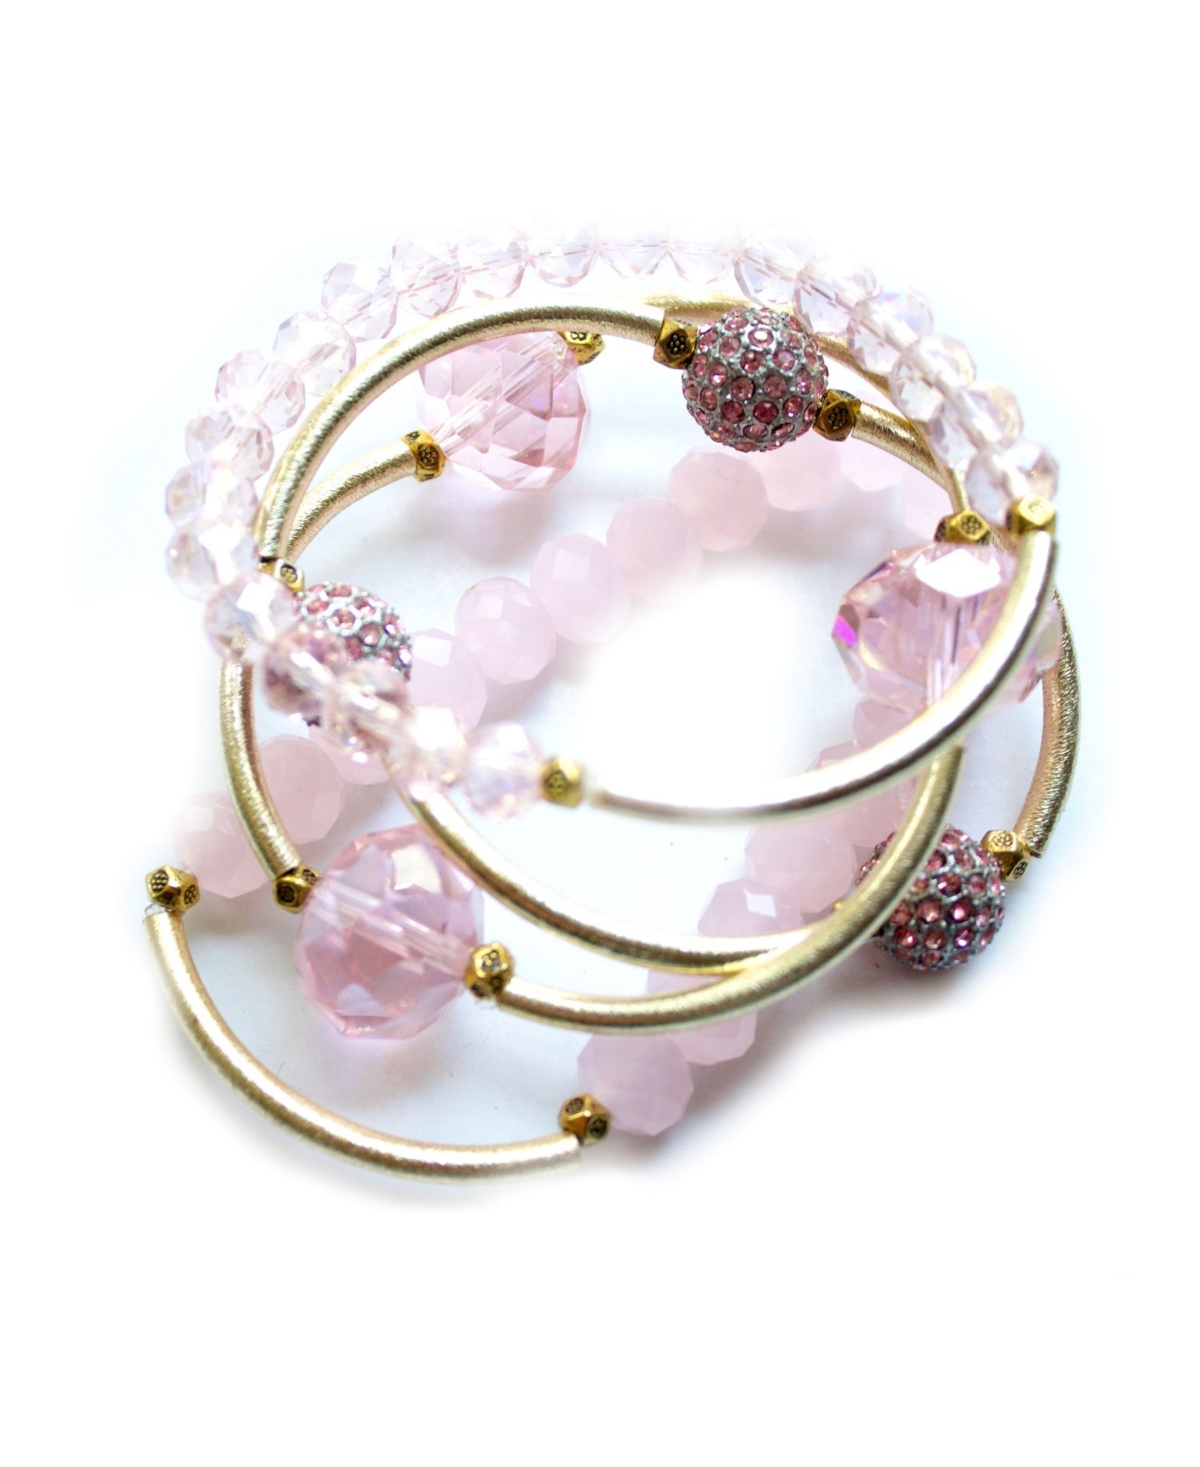 Michael Gabriel Designs Women's Paradise Bracelet Set, 5 Pieces In Pink